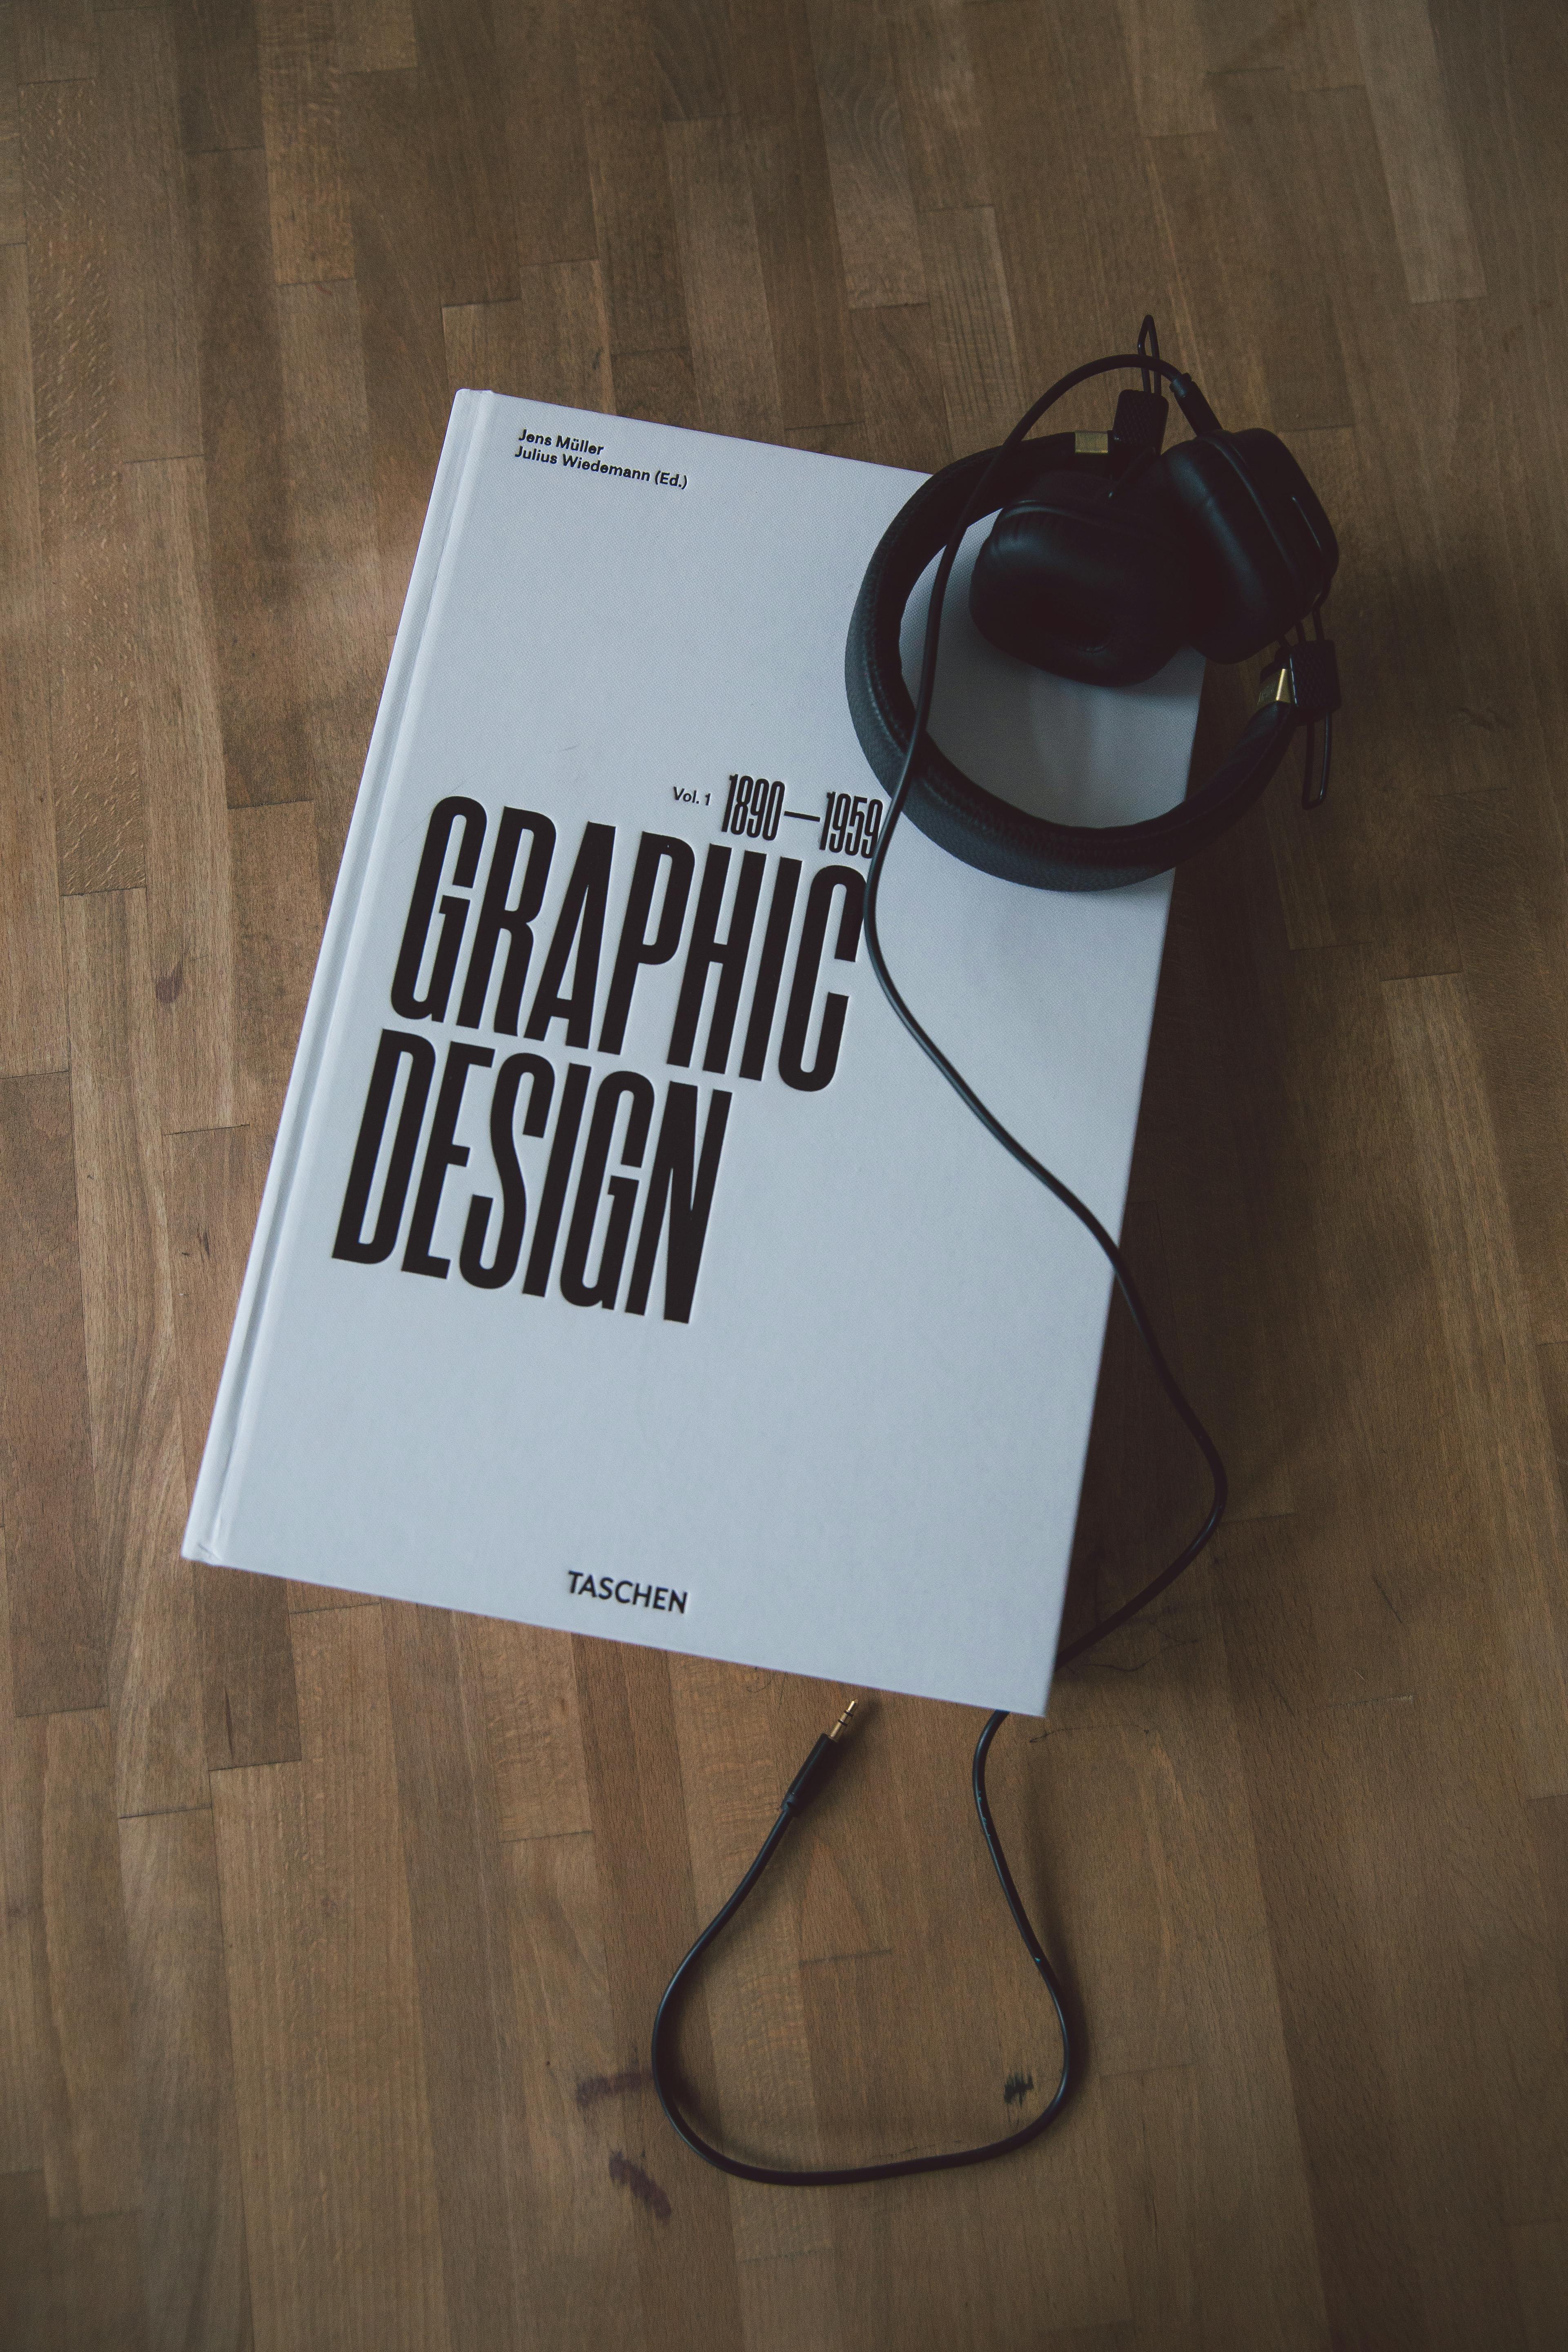 graphic design images